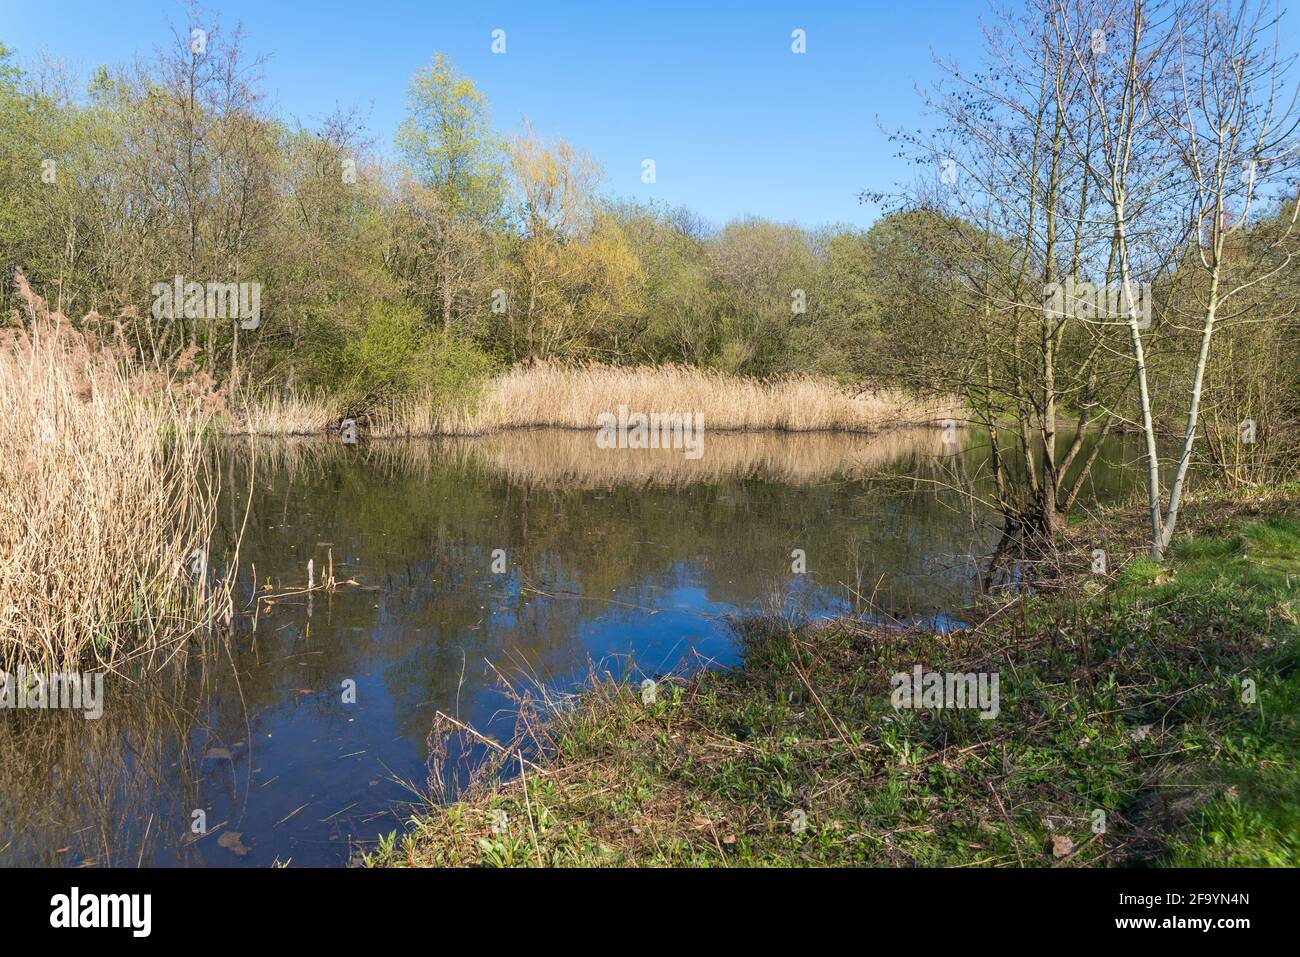 La Reserva Natural Local de Sheepwash en Sandwell, West Midlands, Reino Unido fue creada a partir de tierras de despilfarro industriales reclamadas en 1981, el río Tame corre a través de ella. Foto de stock